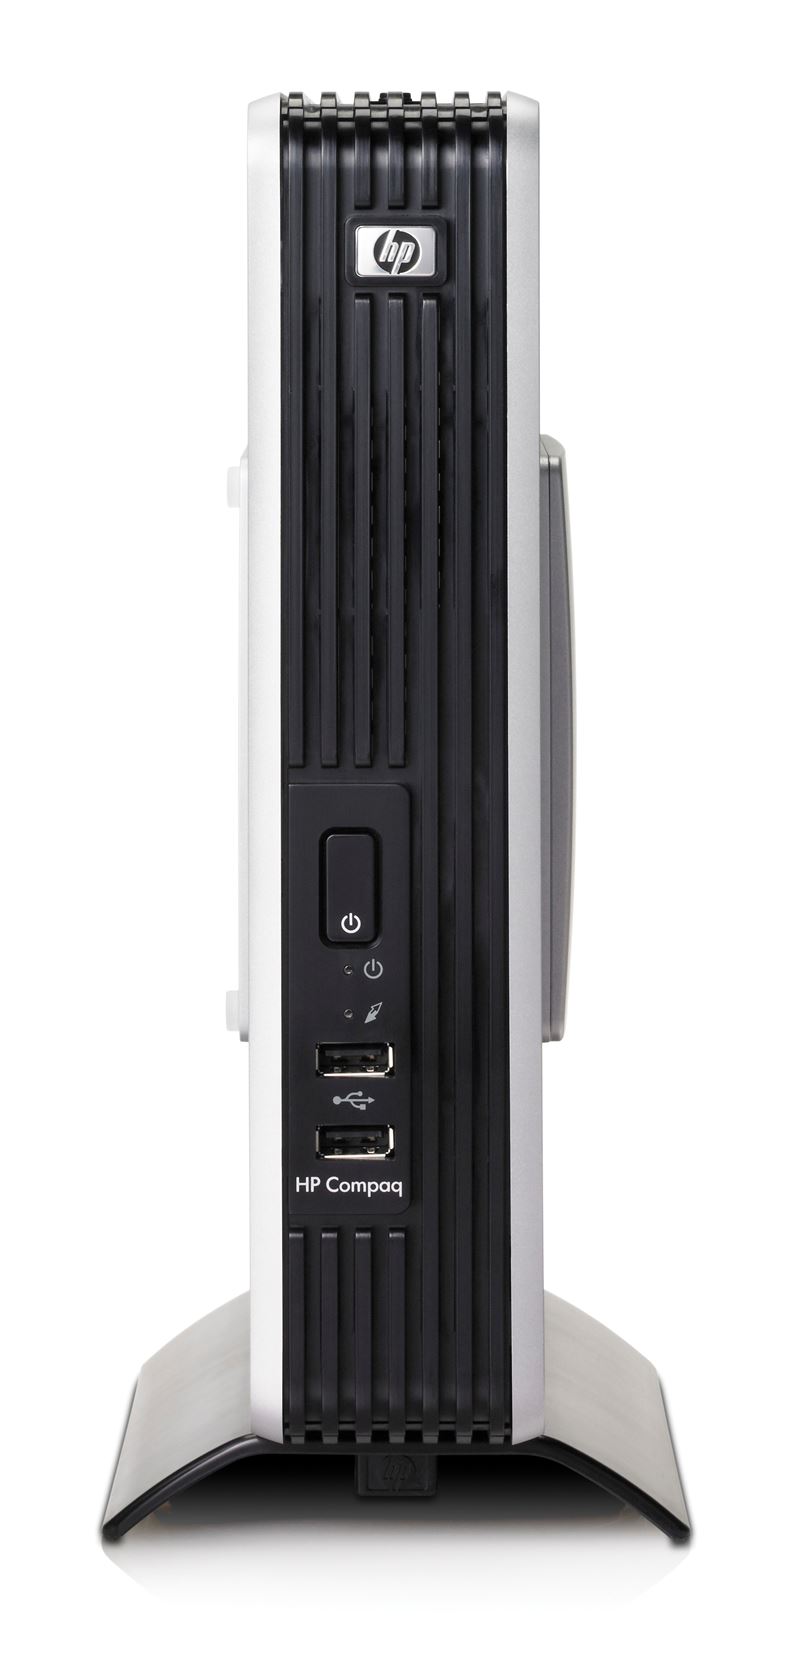 HP Compaq t5720 Thin Client